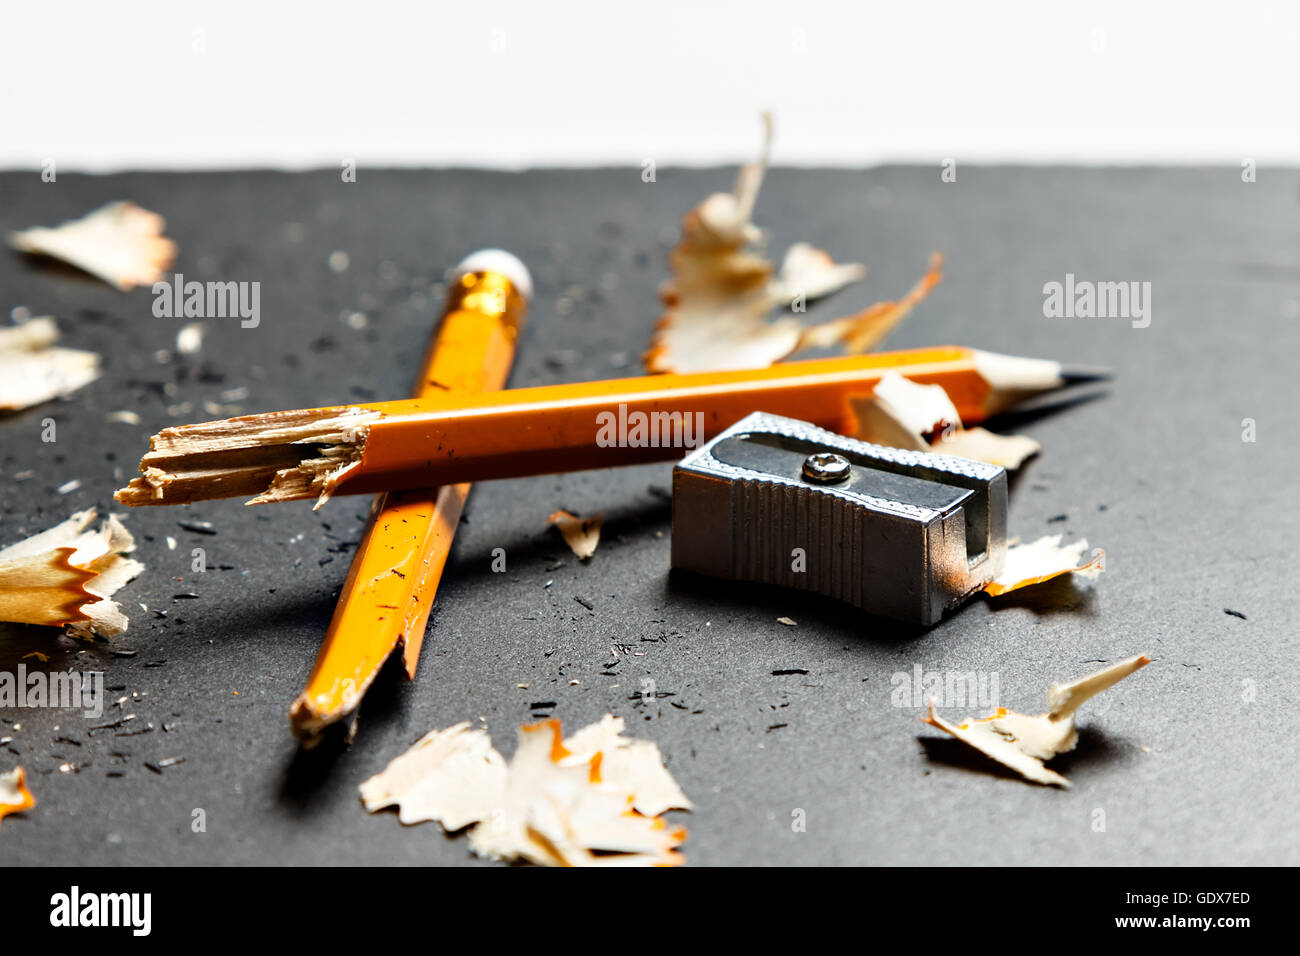 Broken Pencil sharpener et copeaux de métal sur fond noir. Image horizontale. Banque D'Images